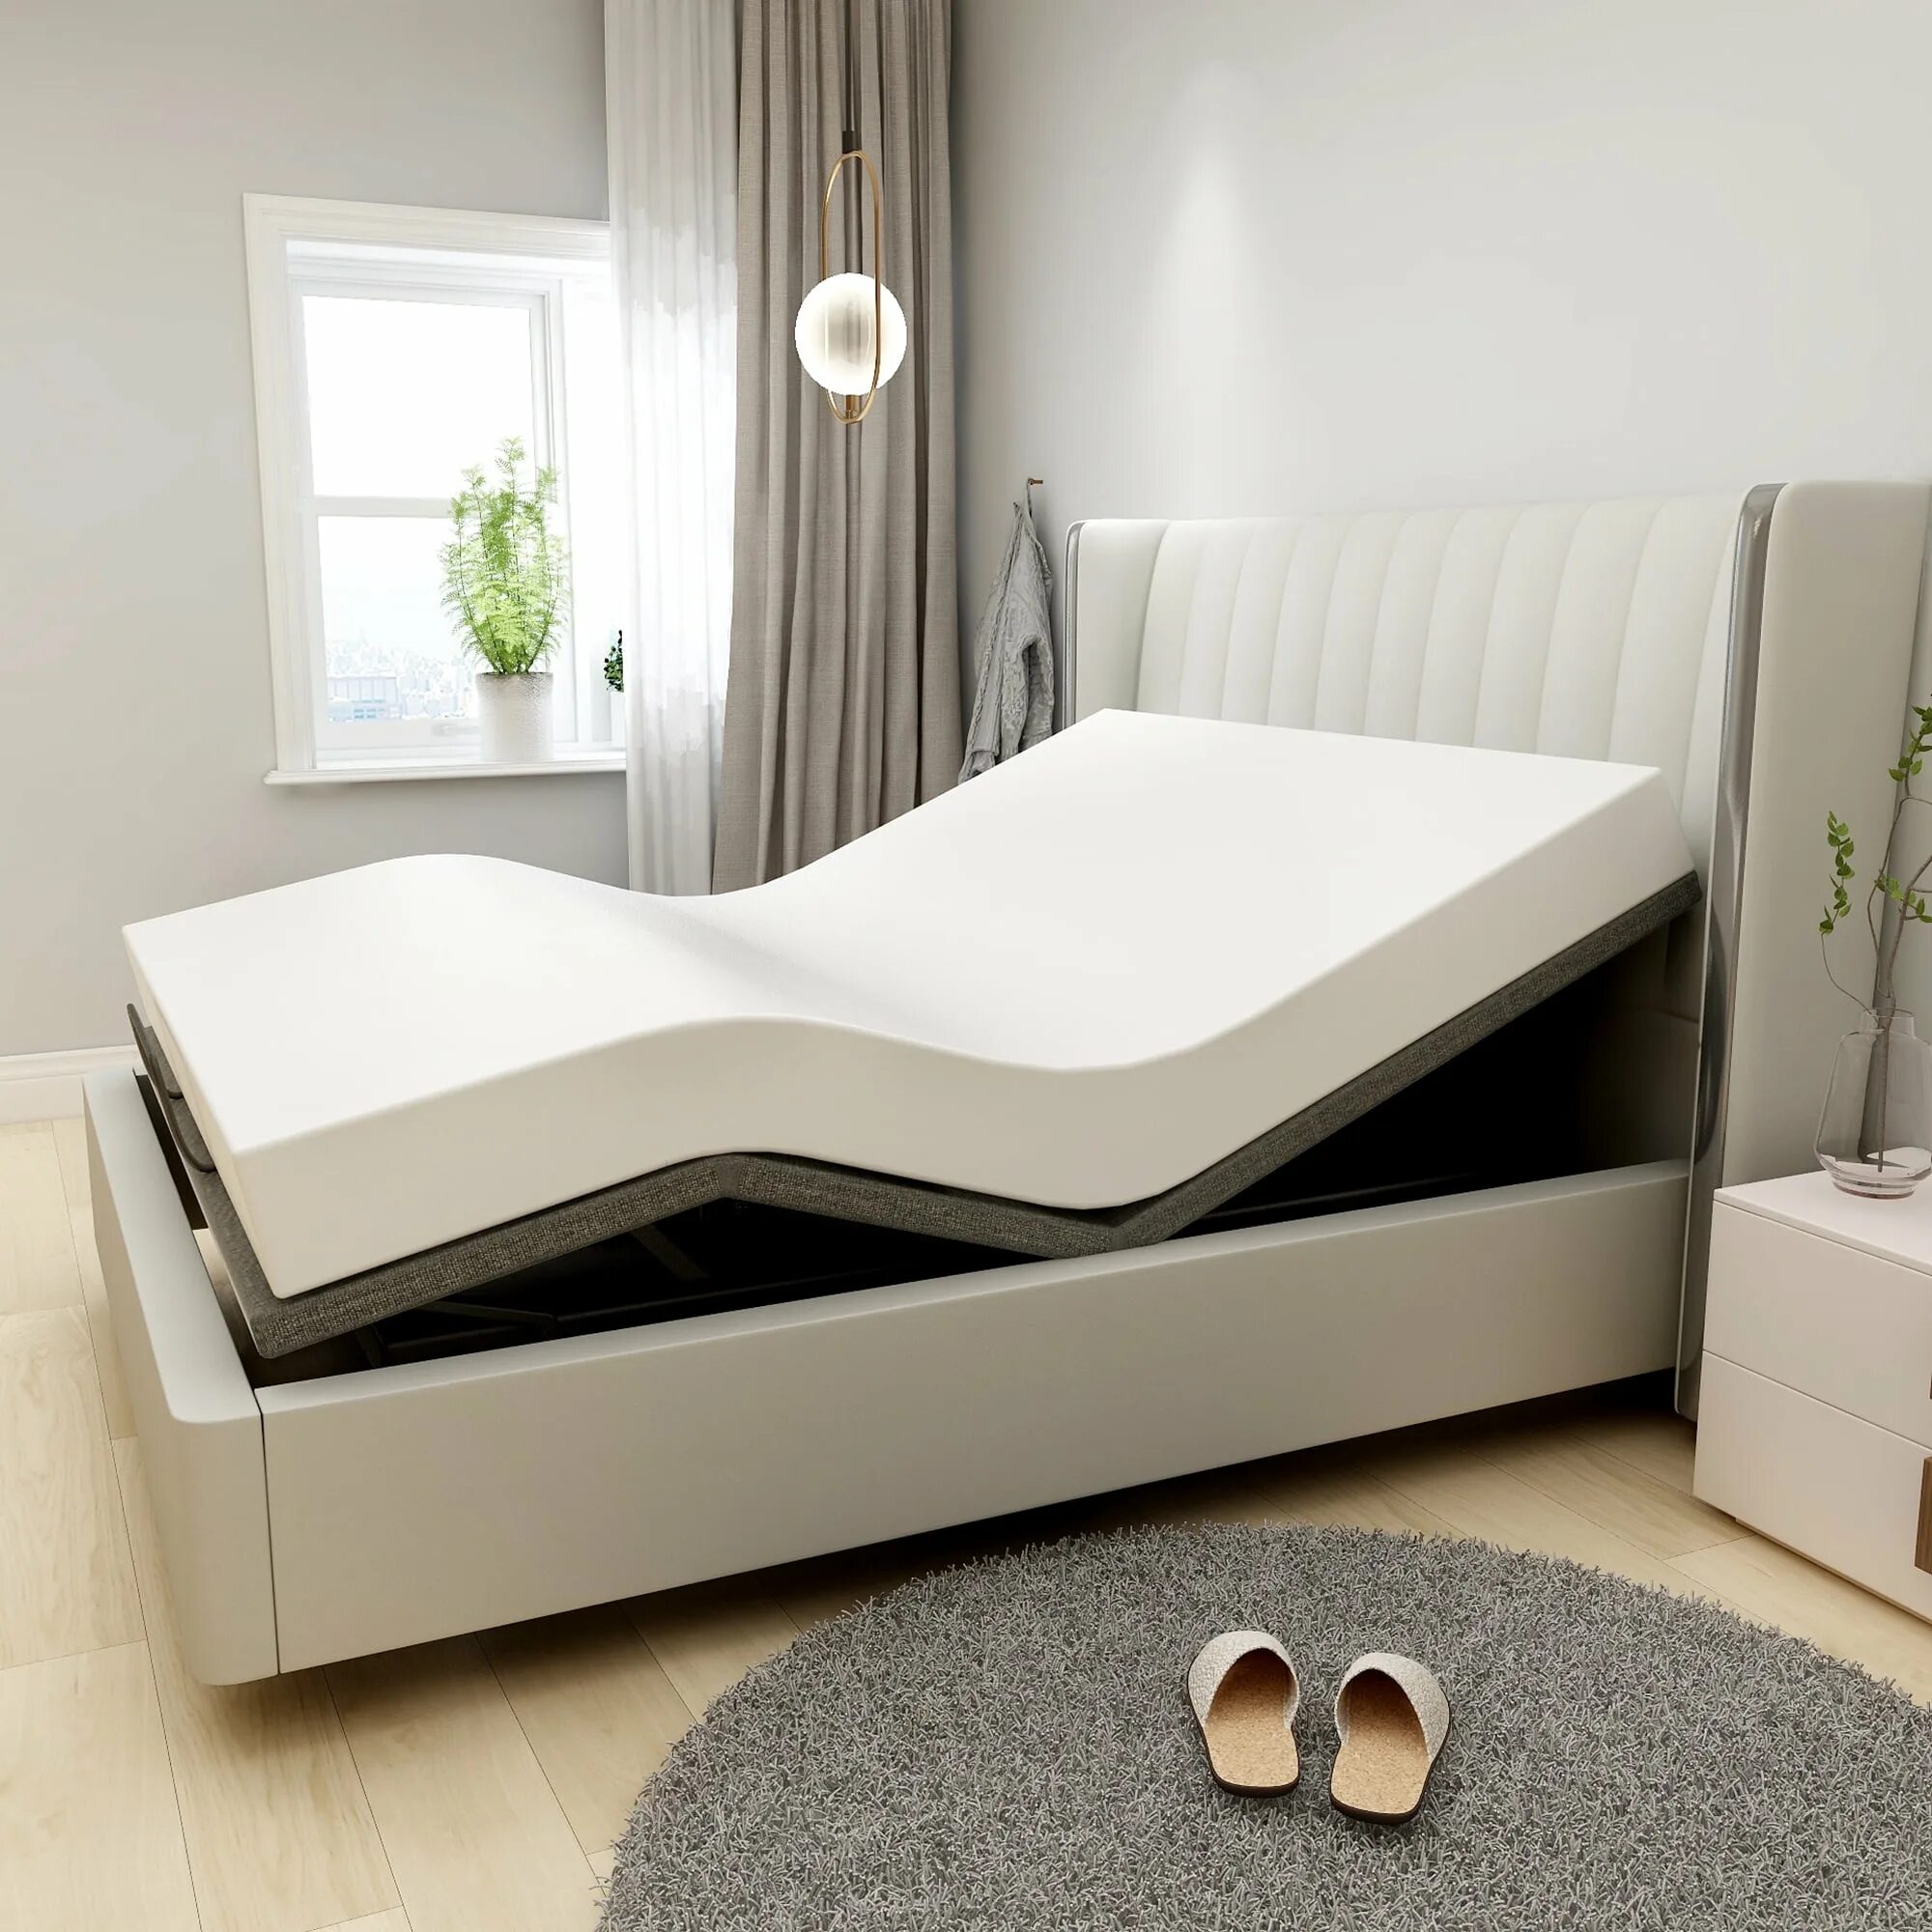 Кровать трансформируемая Ormatek Smart Bed. Подростковая кровать с трансформацией. Smart & Adjustable Beds. Кровать мебель porta.